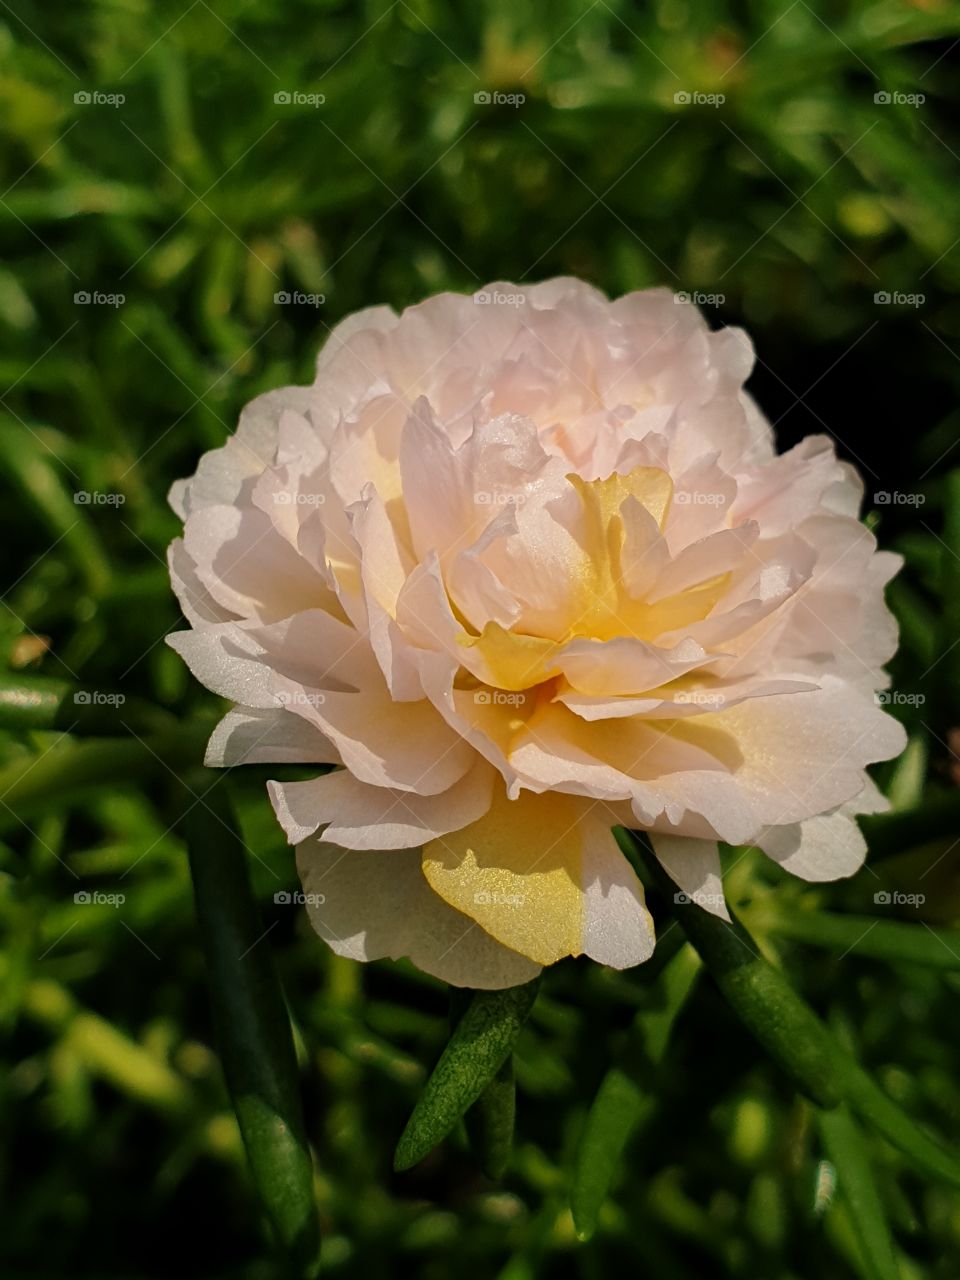 beautiful flowers in my garden